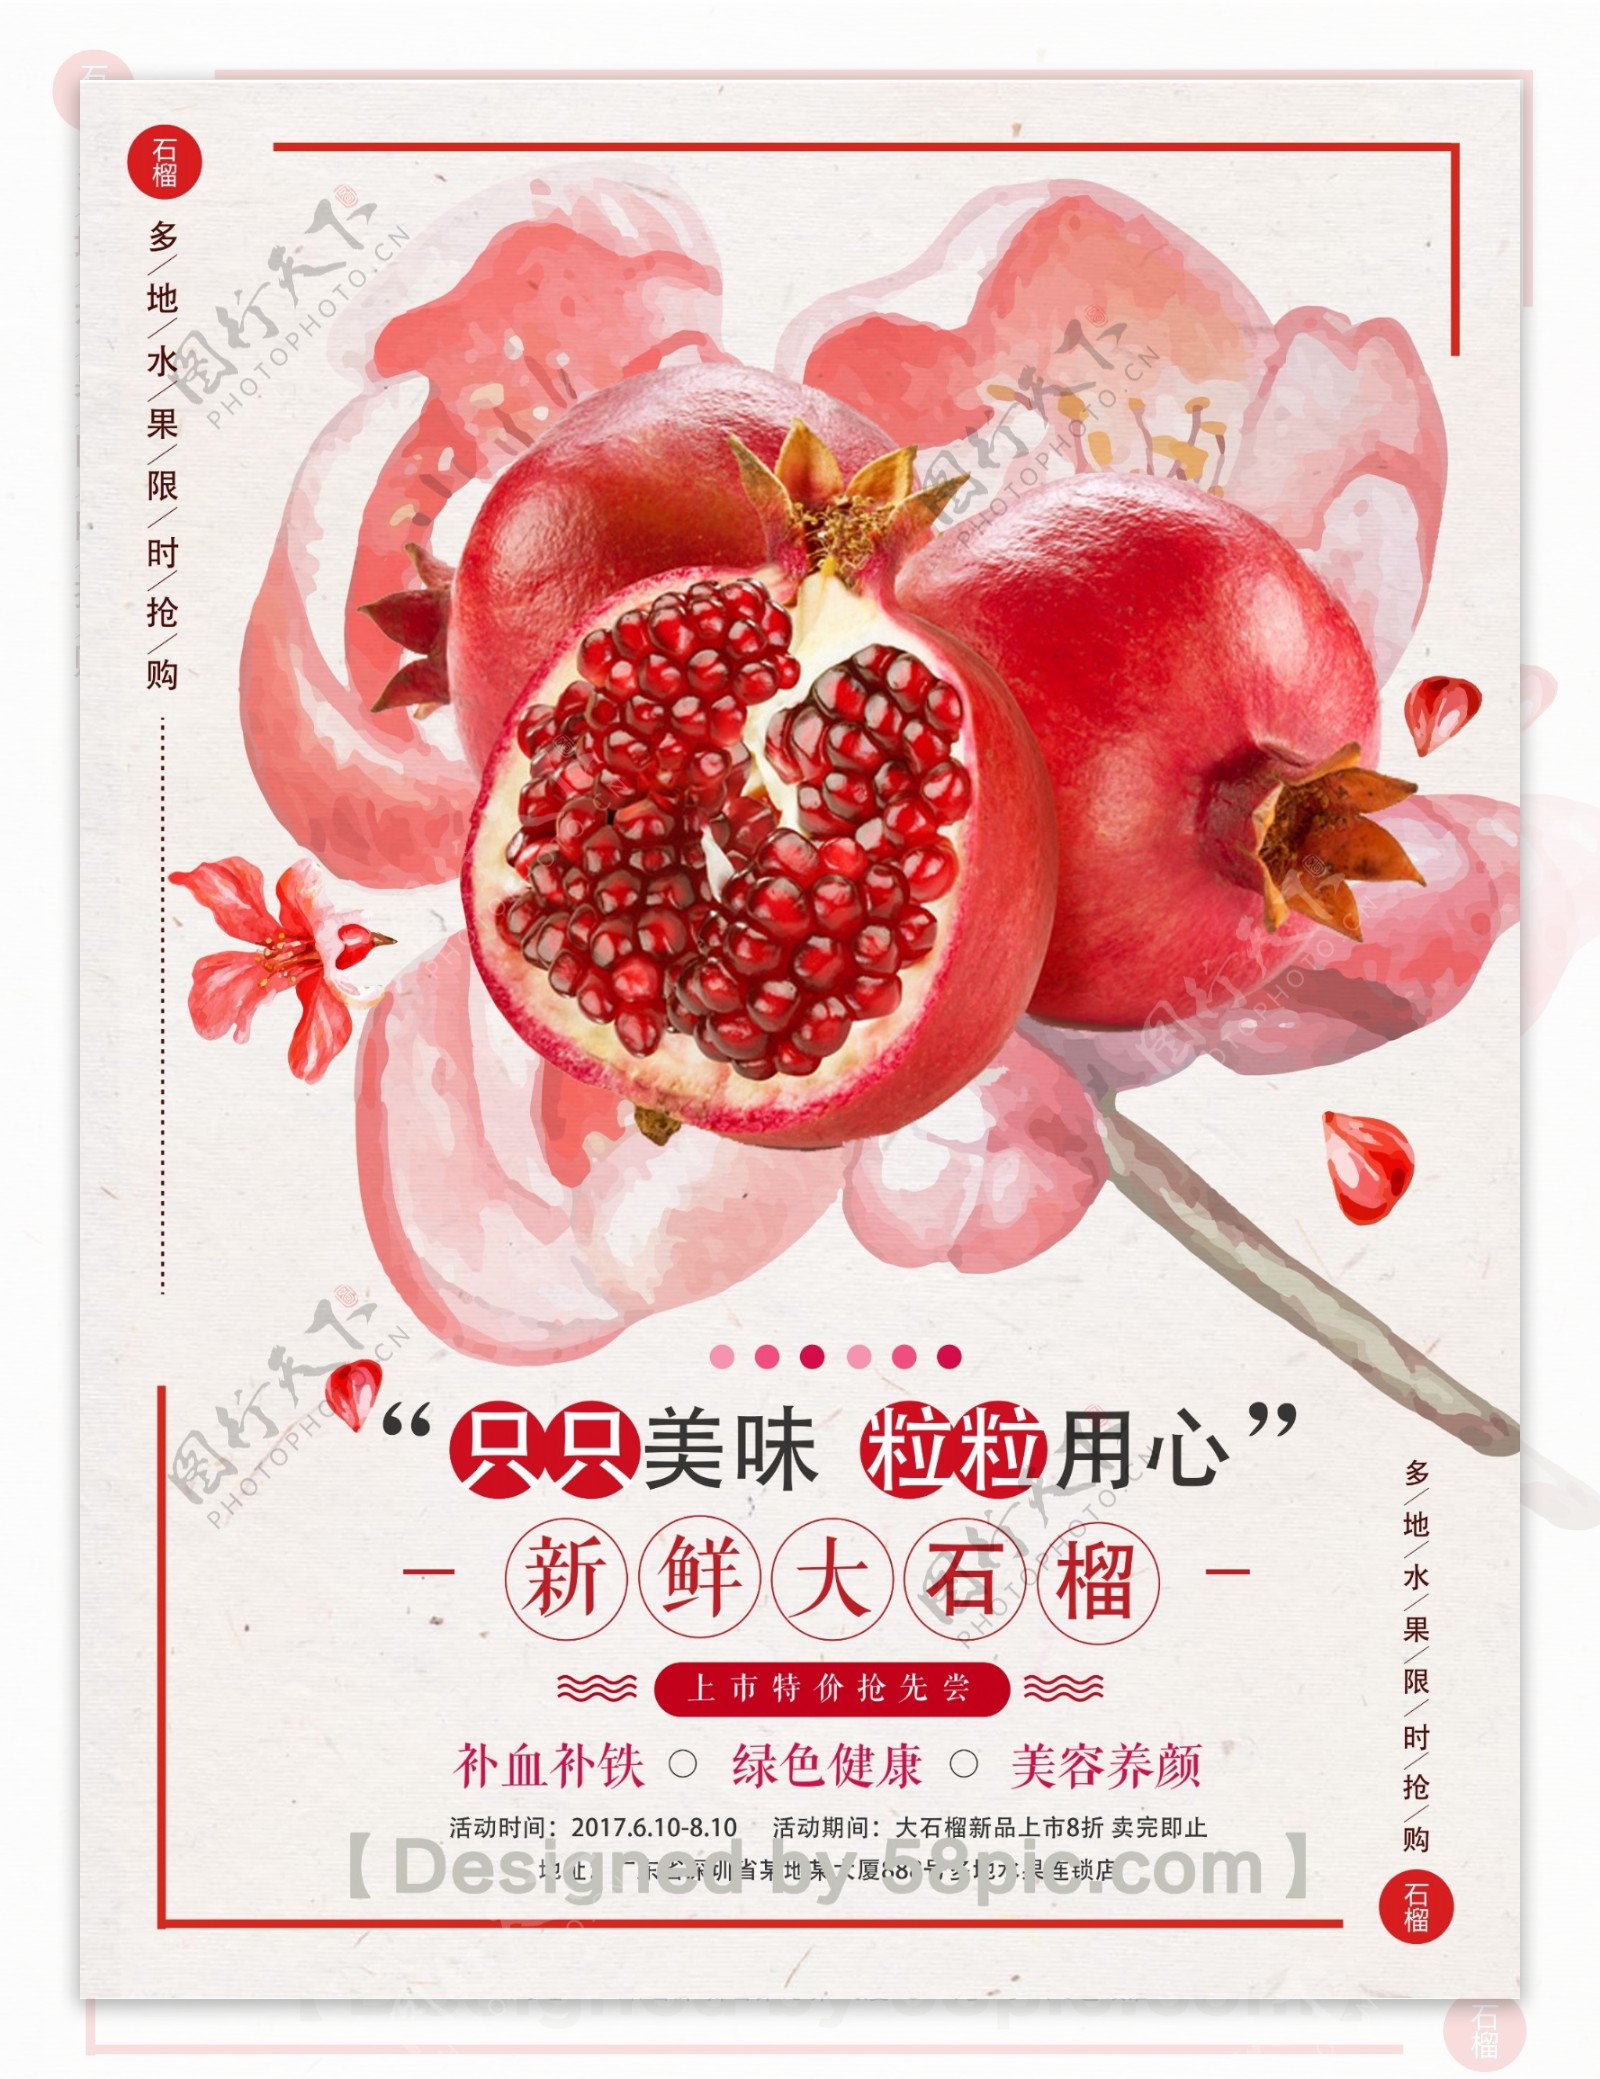 清新夏日水果红石榴促销宣传海报